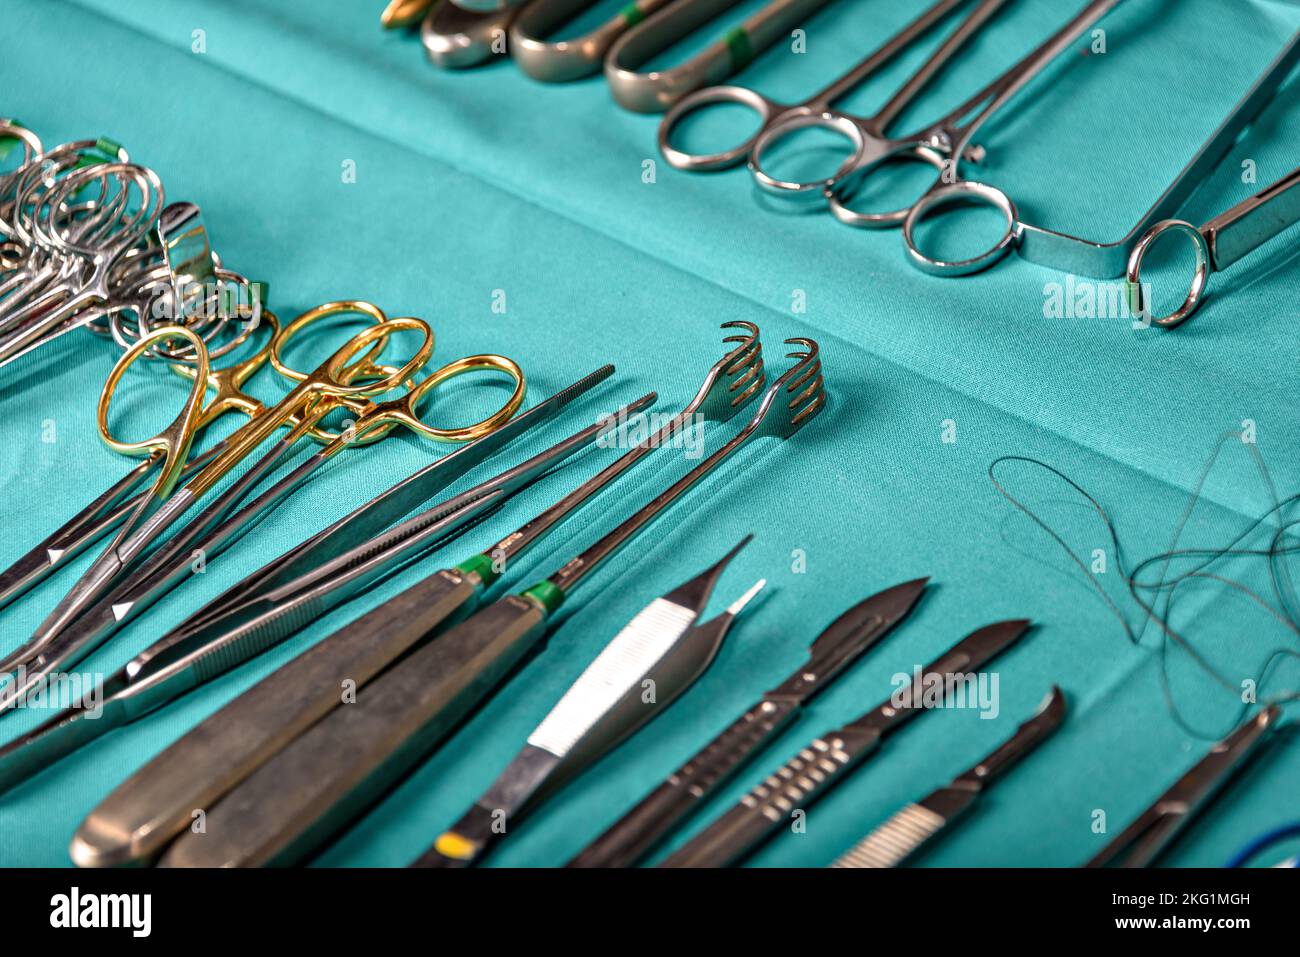 Vorbereitung für chirurgische Instrumente während der Operation, Schere,  Pinzette und Skalpell, gerade Schere zum Schneiden von Nahtmaterial, wo sie  als gebogene Schere dient Stockfotografie - Alamy